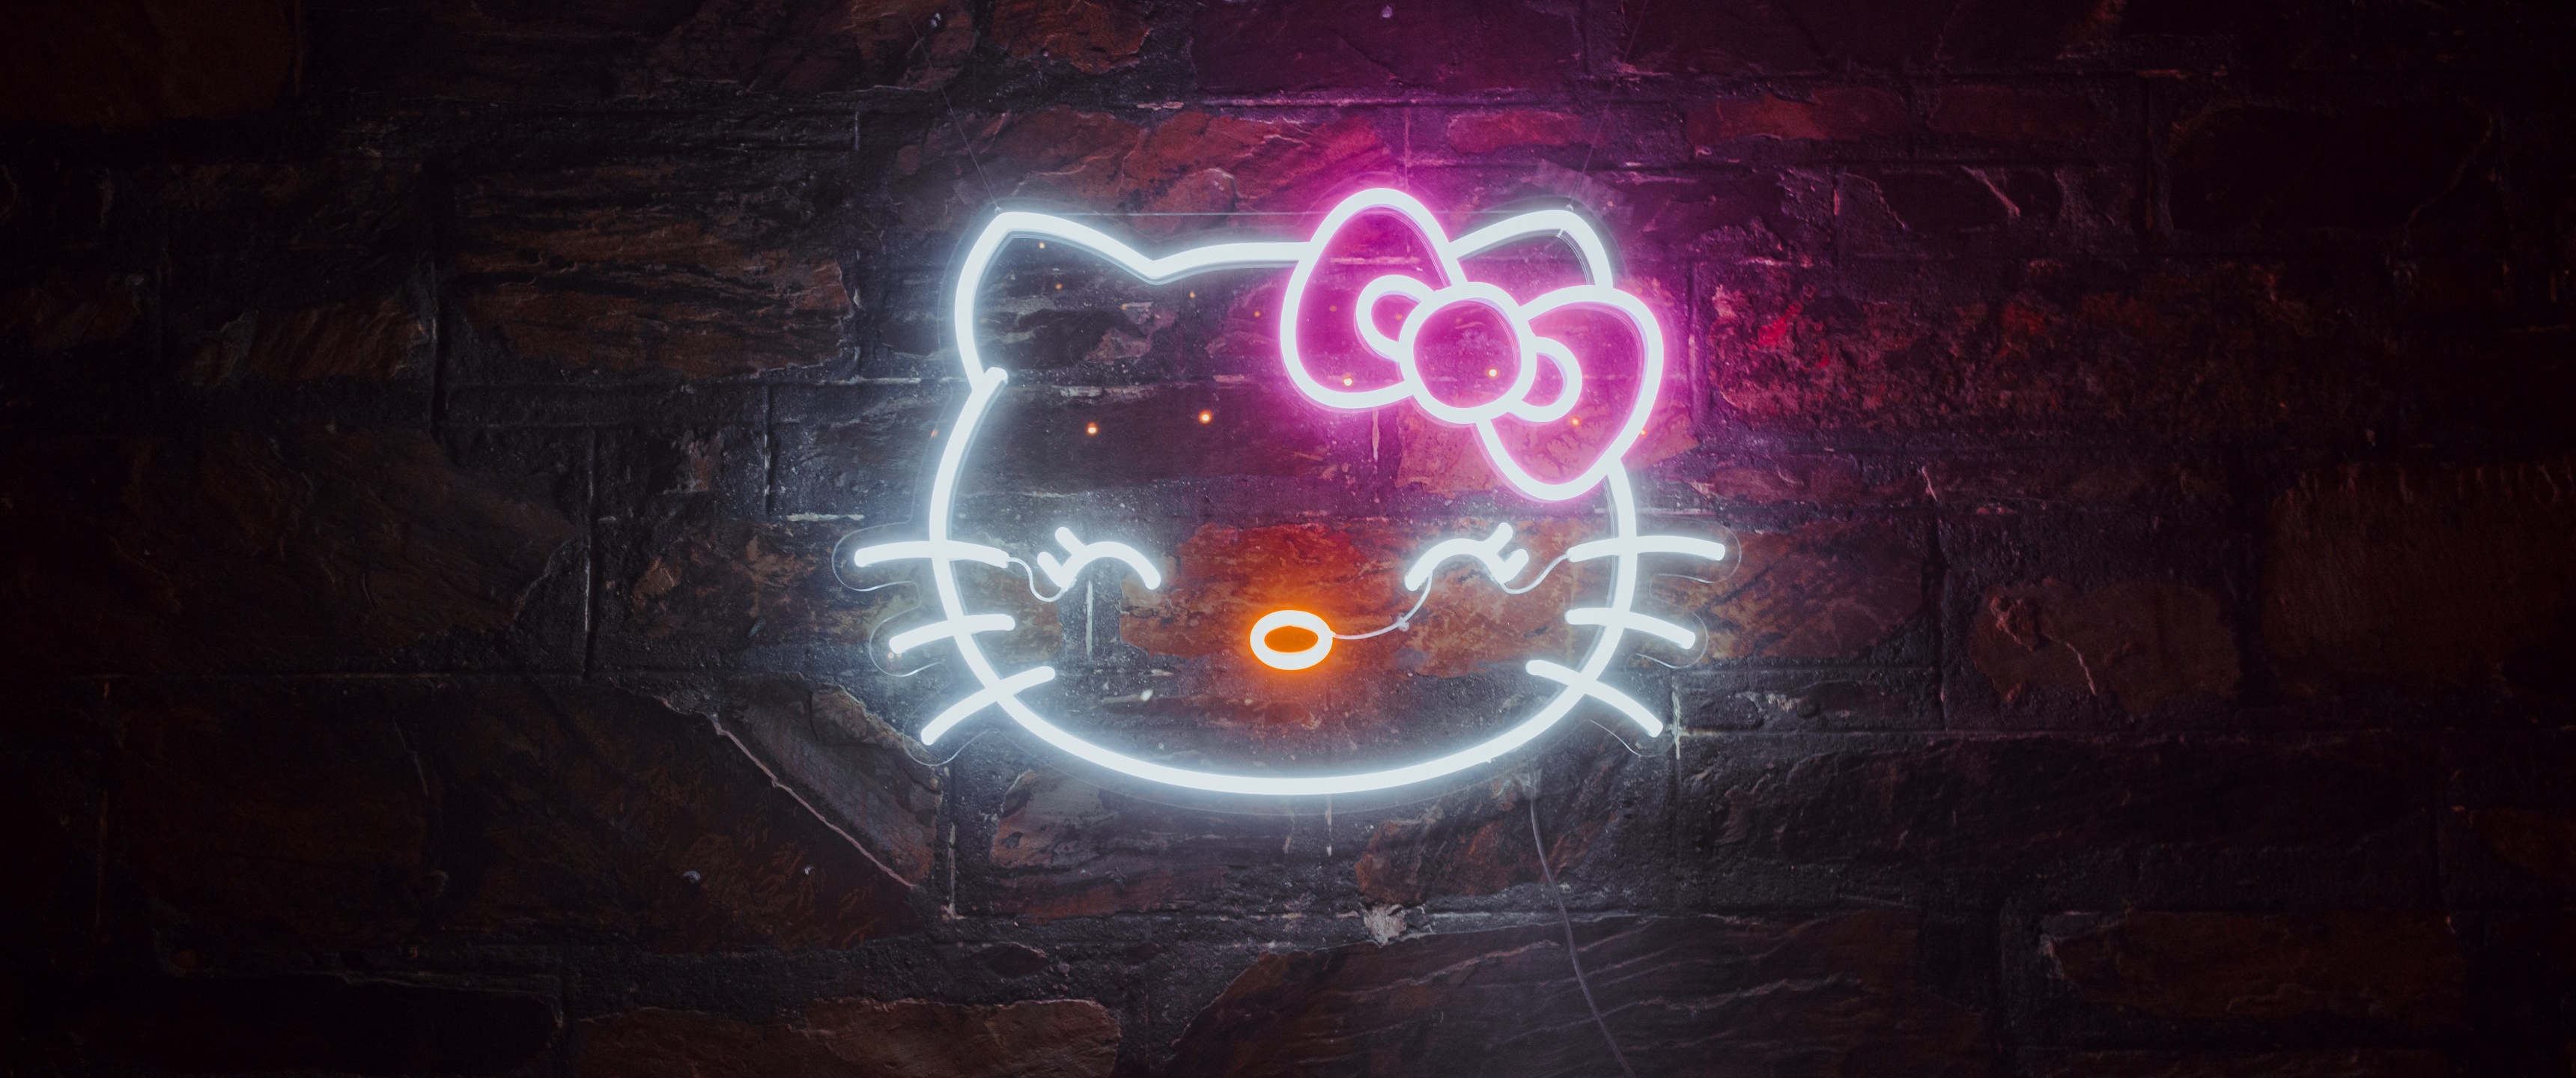 Bạn yêu thích sự sáng tạo và đổi mới? Hãy cùng chúng tôi khám phá ảnh Hello Kitty với đèn neon mới nhất! Bộ sưu tập này sẽ đưa bạn vào một thế giới mới và tương tác với Hello Kitty theo cách hoàn toàn khác biệt. Khám phá và cảm nhận sự sáng tạo của những tác phẩm nghệ thuật này.